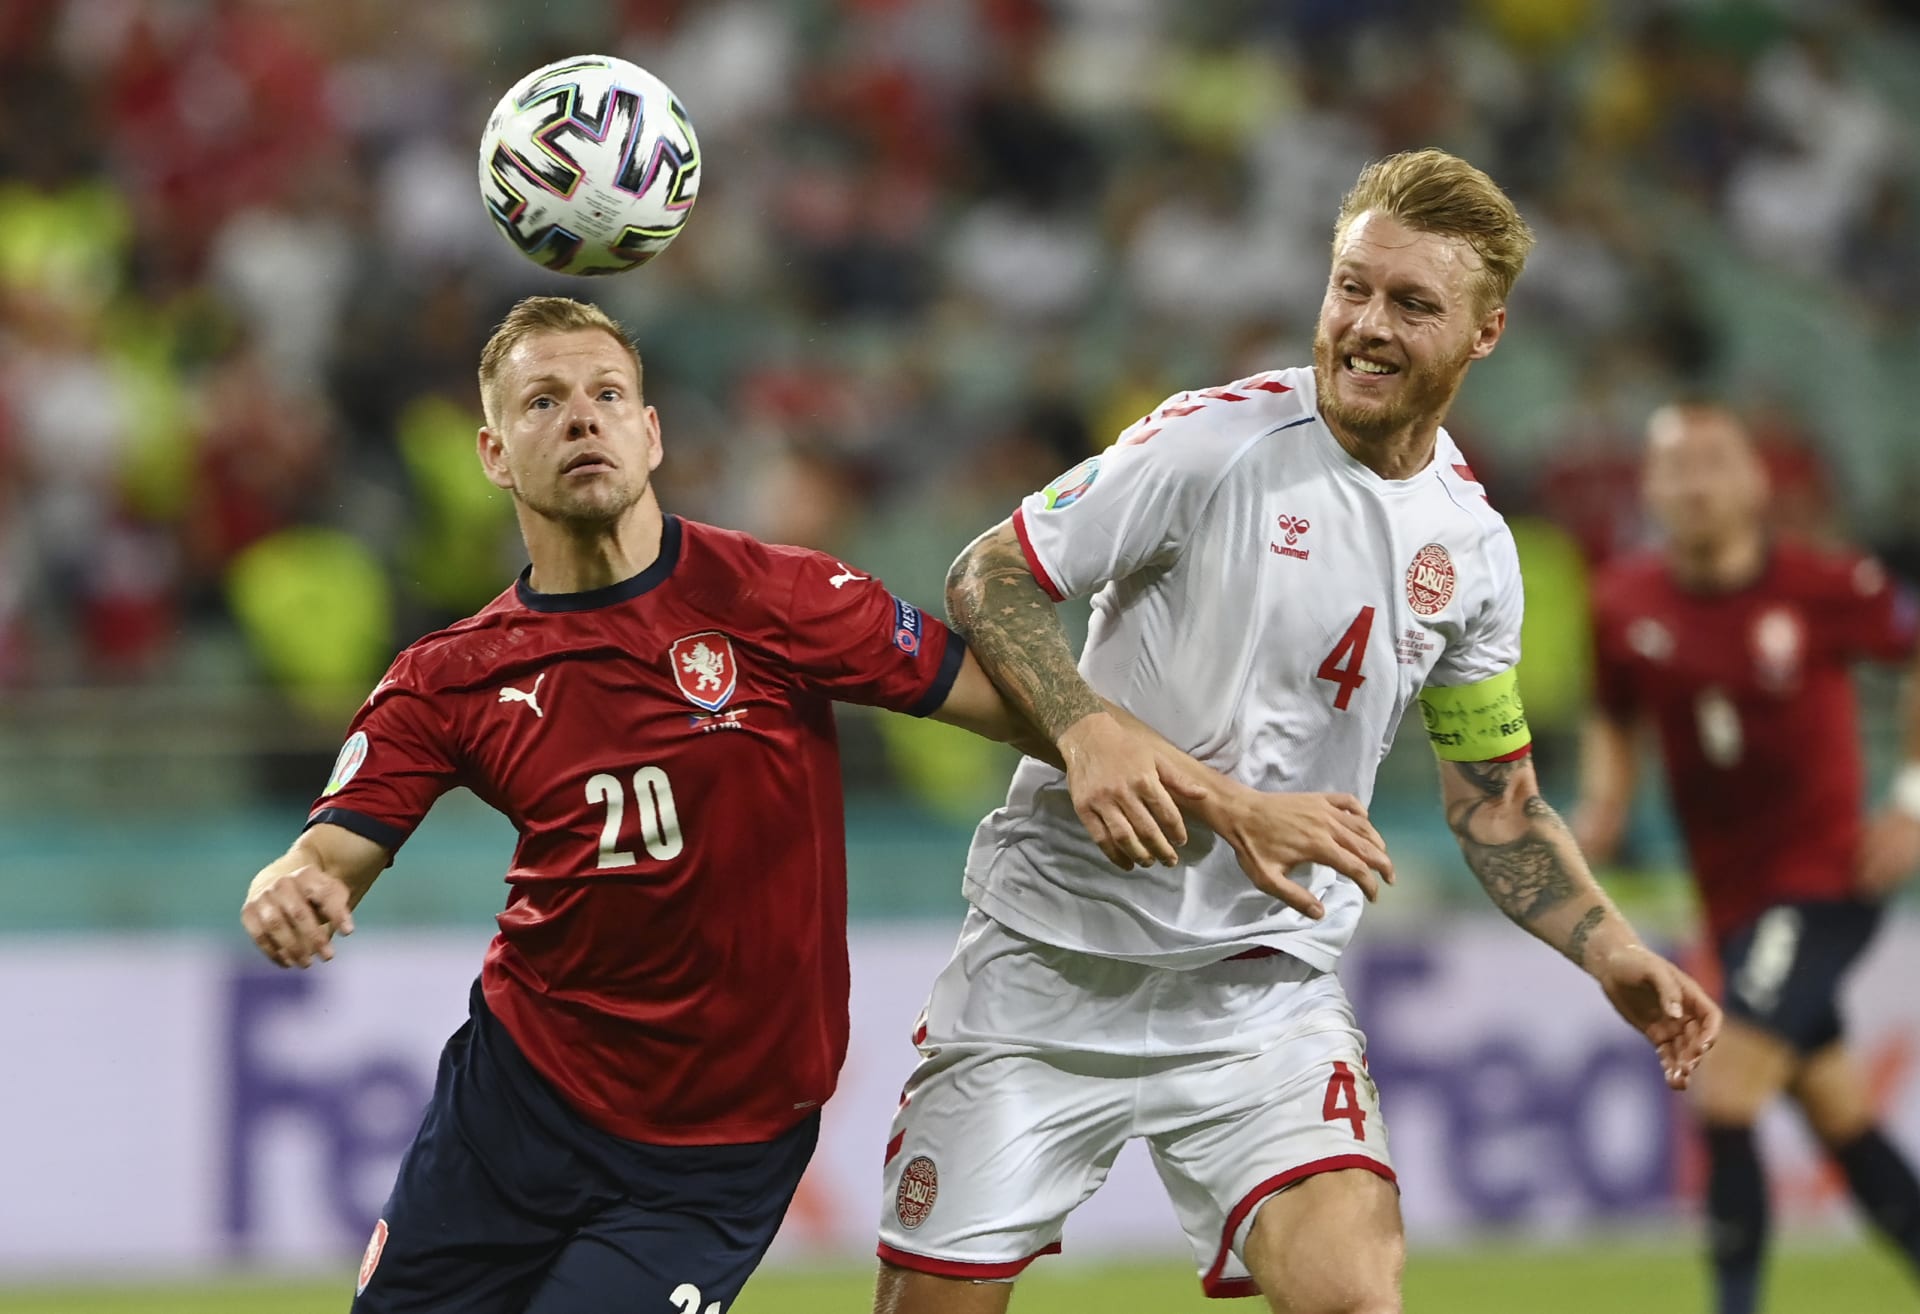 Český útočník Matěj Vydra (vlevo) se snaží obejít dánského kapitána Simona Kjaera ve čtvrtfinále Eura 2021, které Dánové vyhráli 2:1.